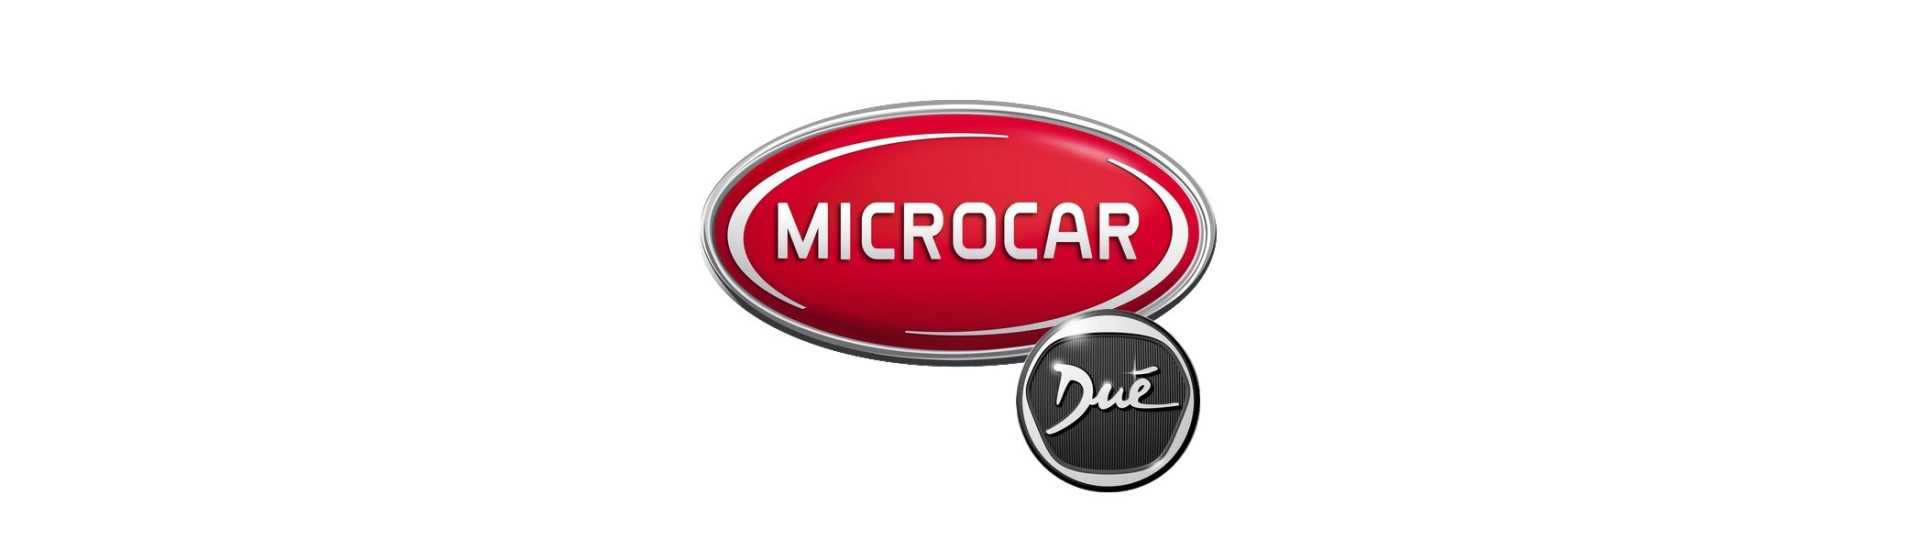 Wheel Pack zum besten Preis für Auto ohne Lizenz Microcar Dué